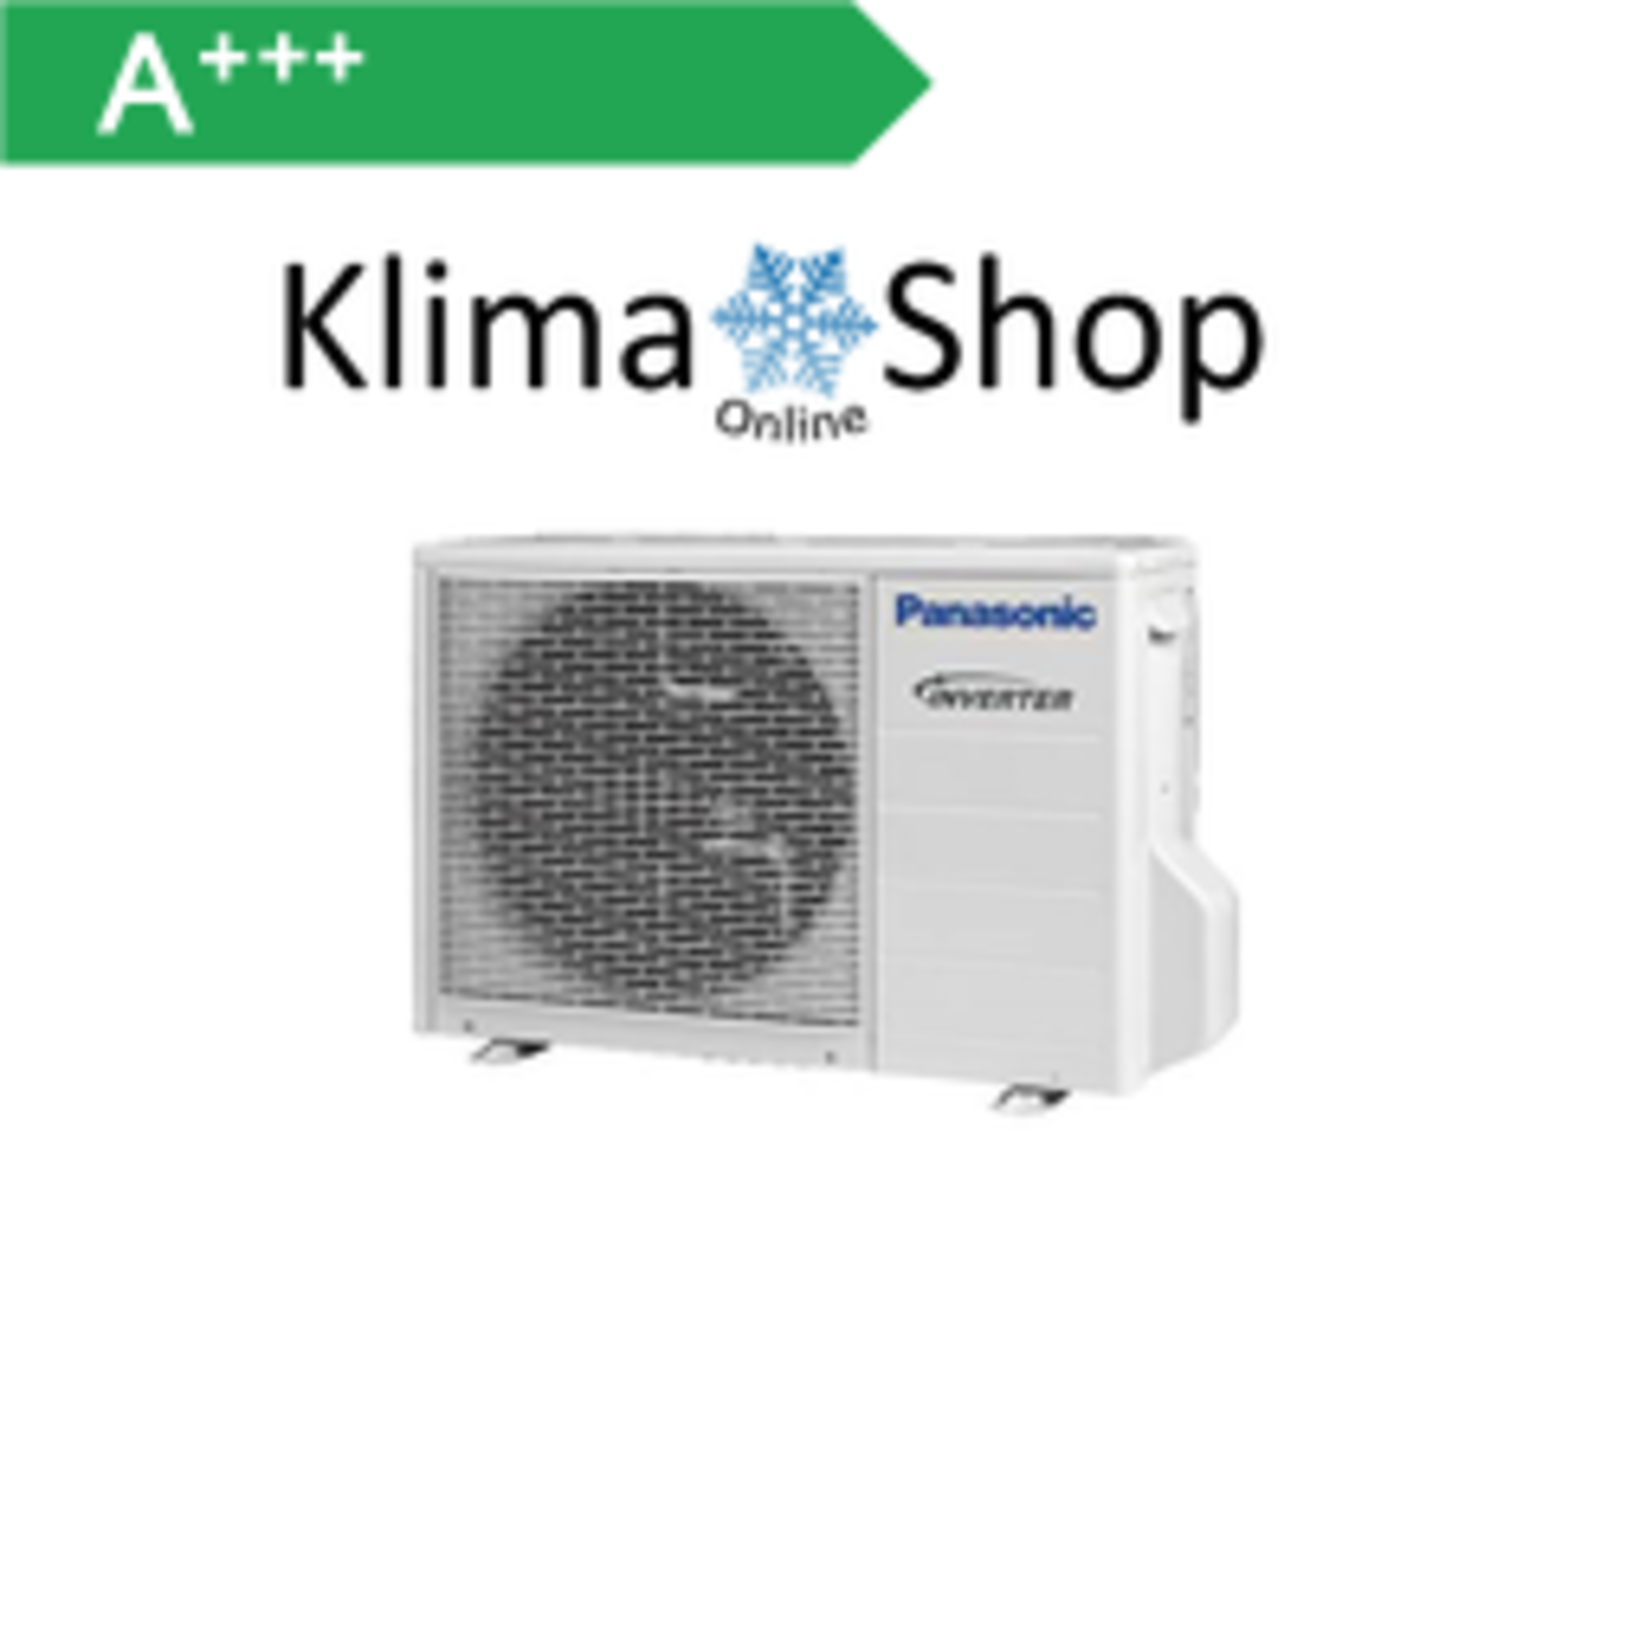 Panasonic Klimaanlage Außengerät  2-Raum Multisplit 4,1 kW